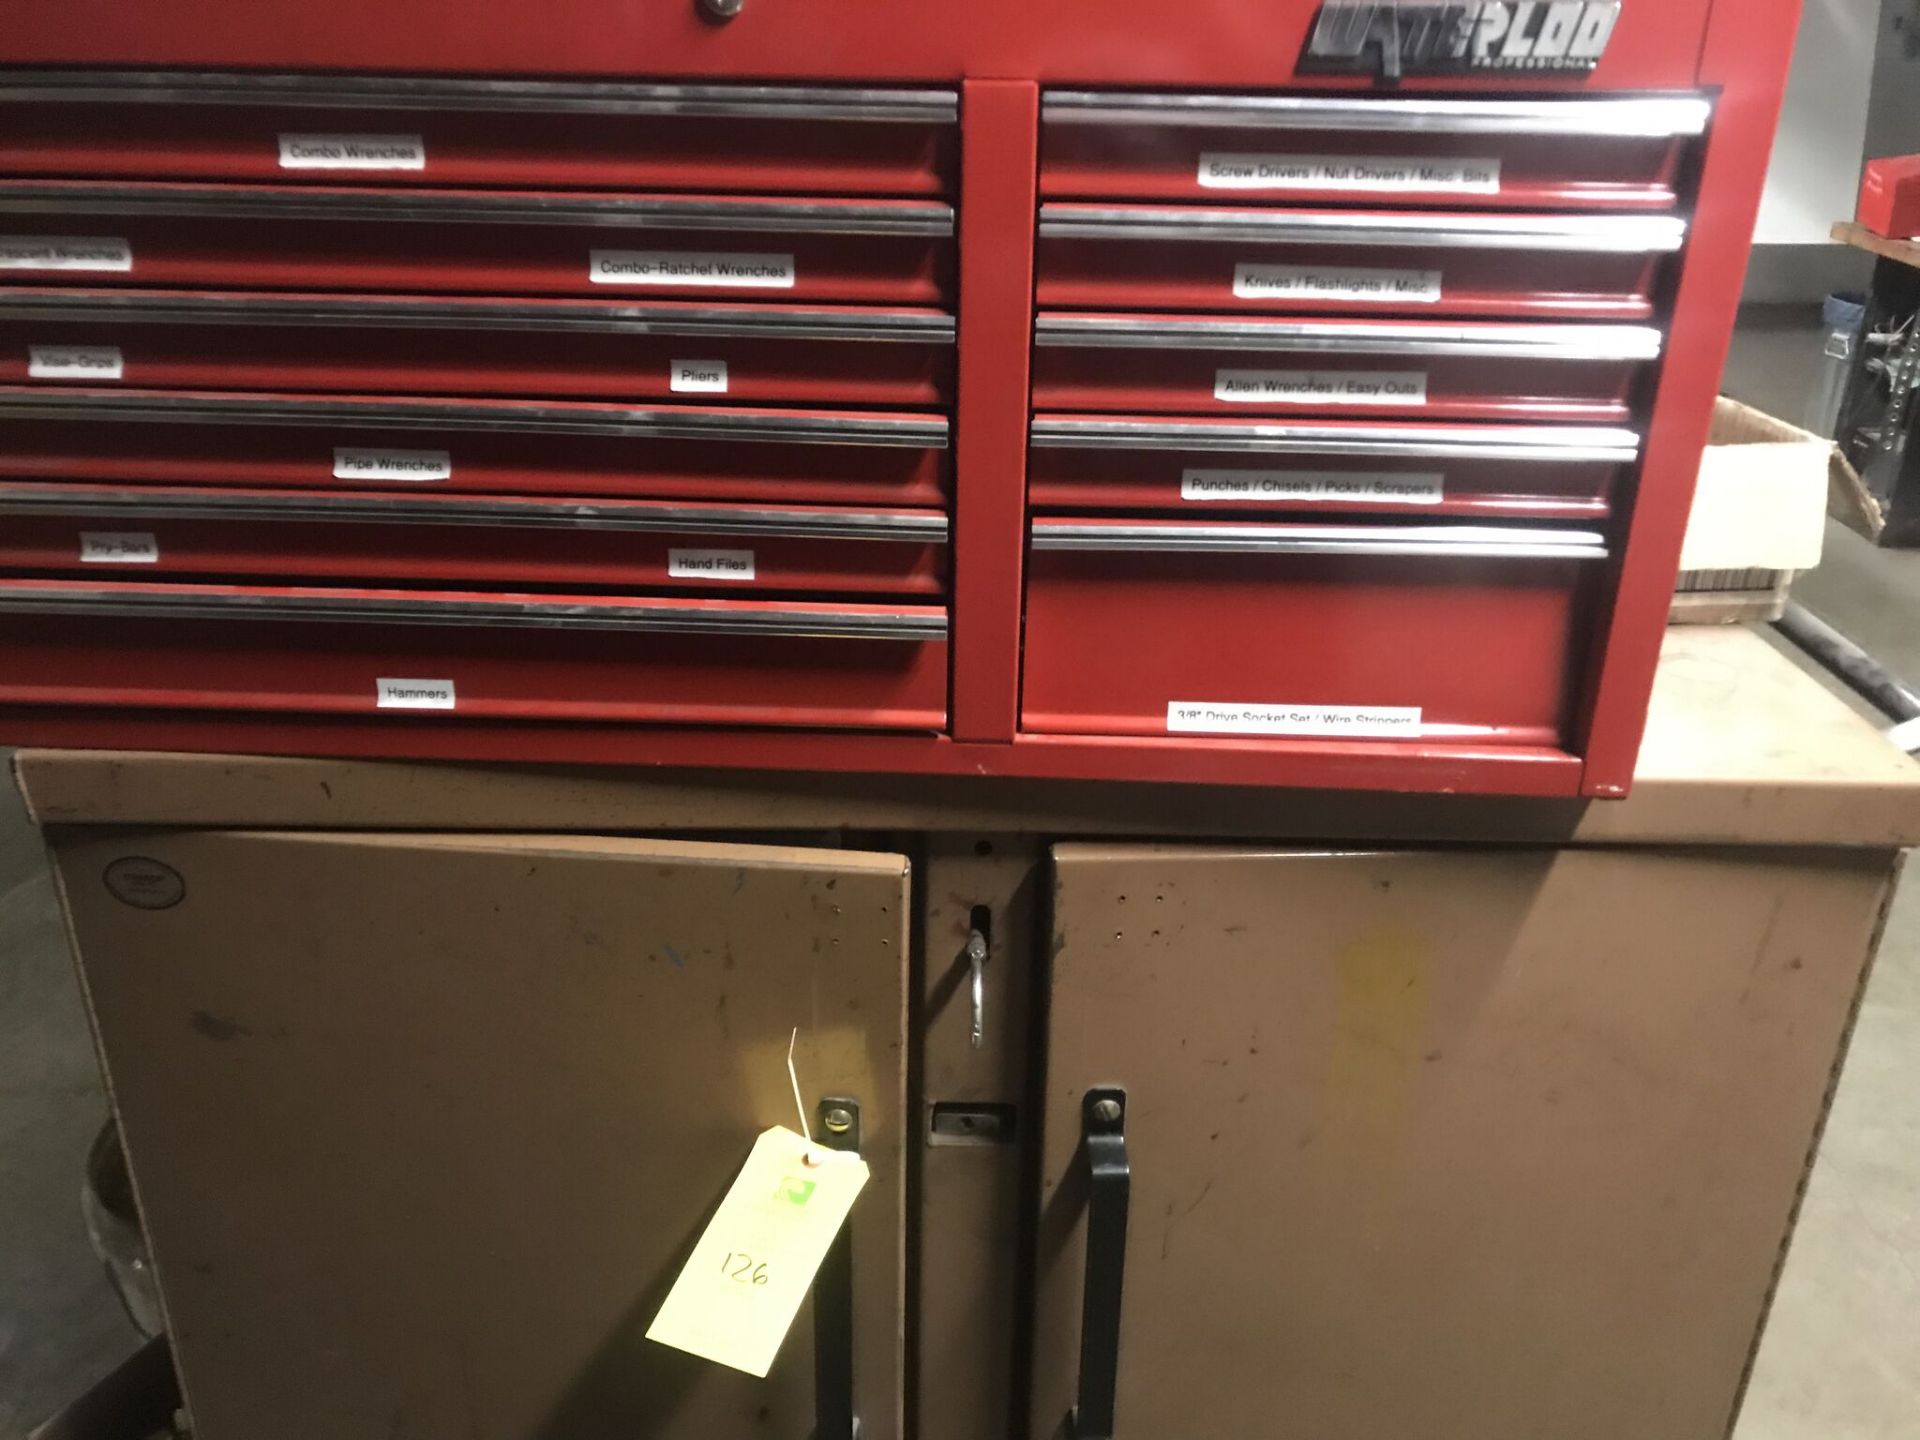 KNAACK Toolbox, Waterloo Tool Box